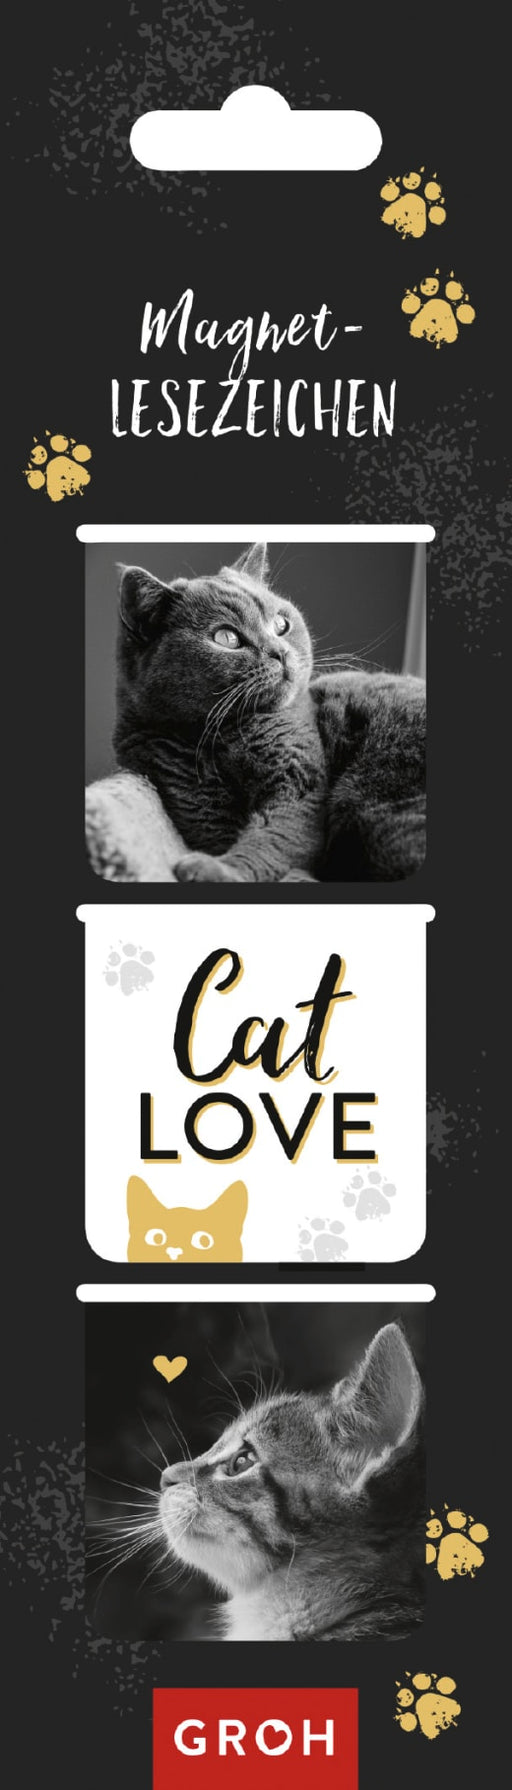 Magnetlesezeichen Cat love - Magnet